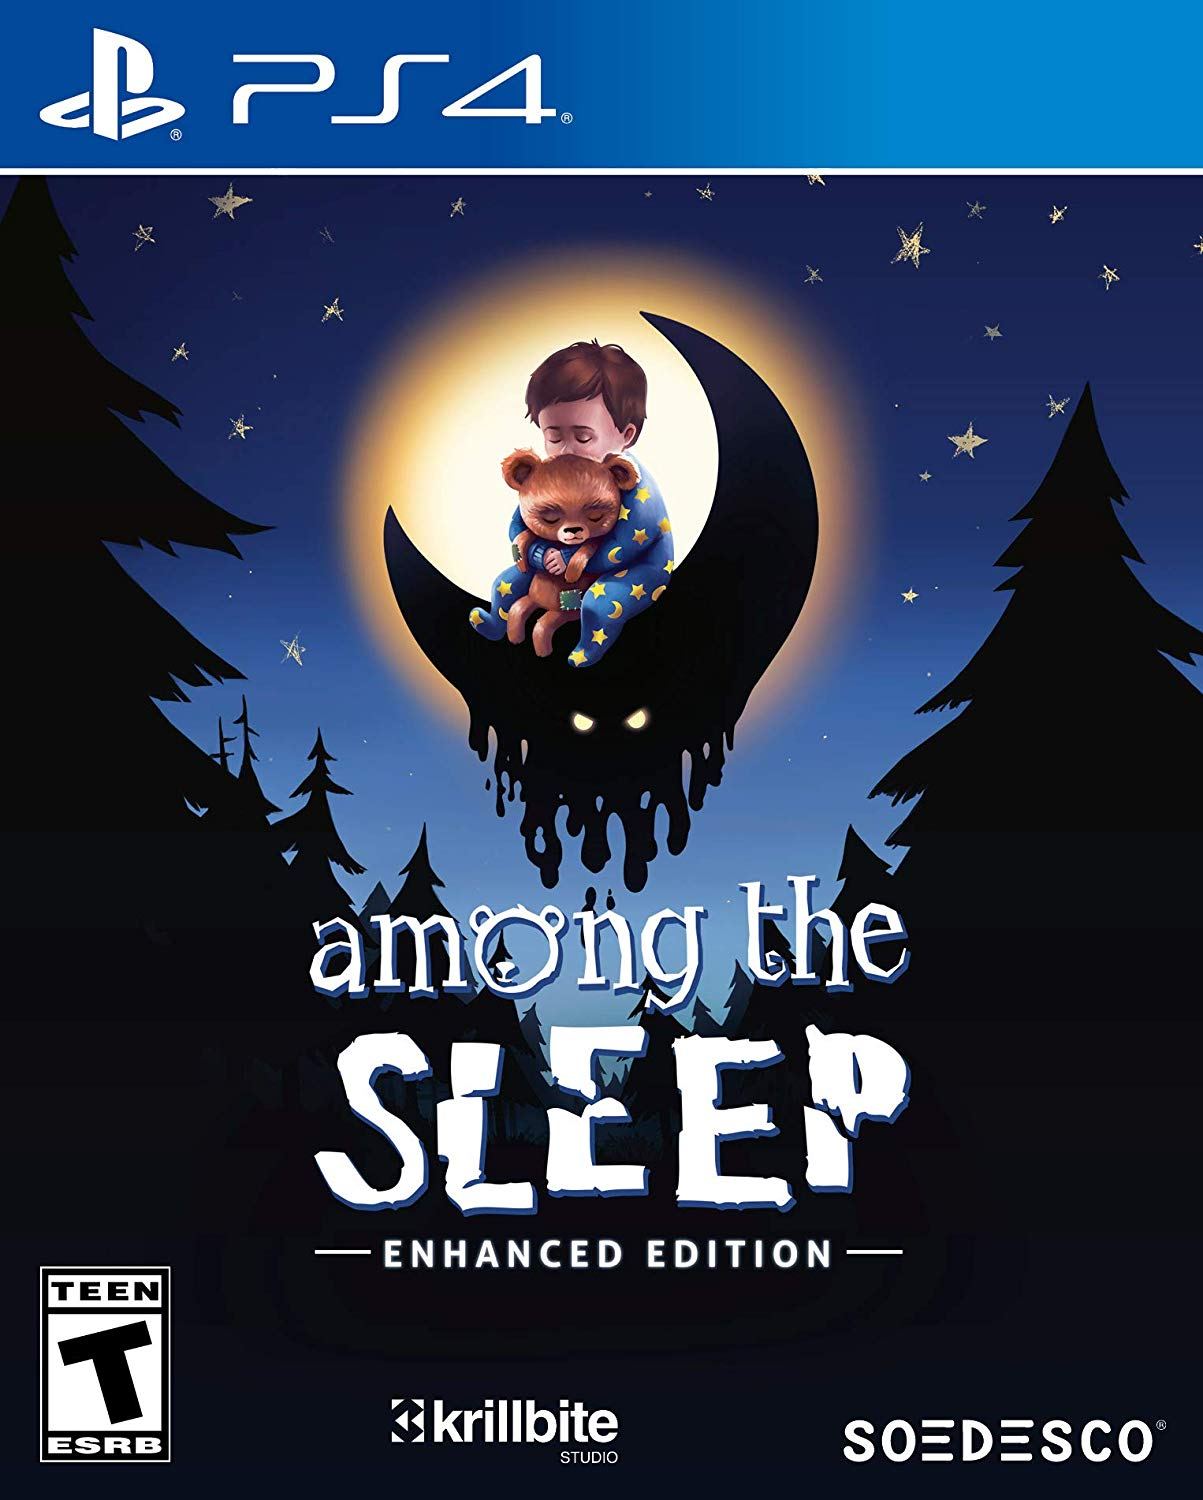 download among the sleep enhanced edition